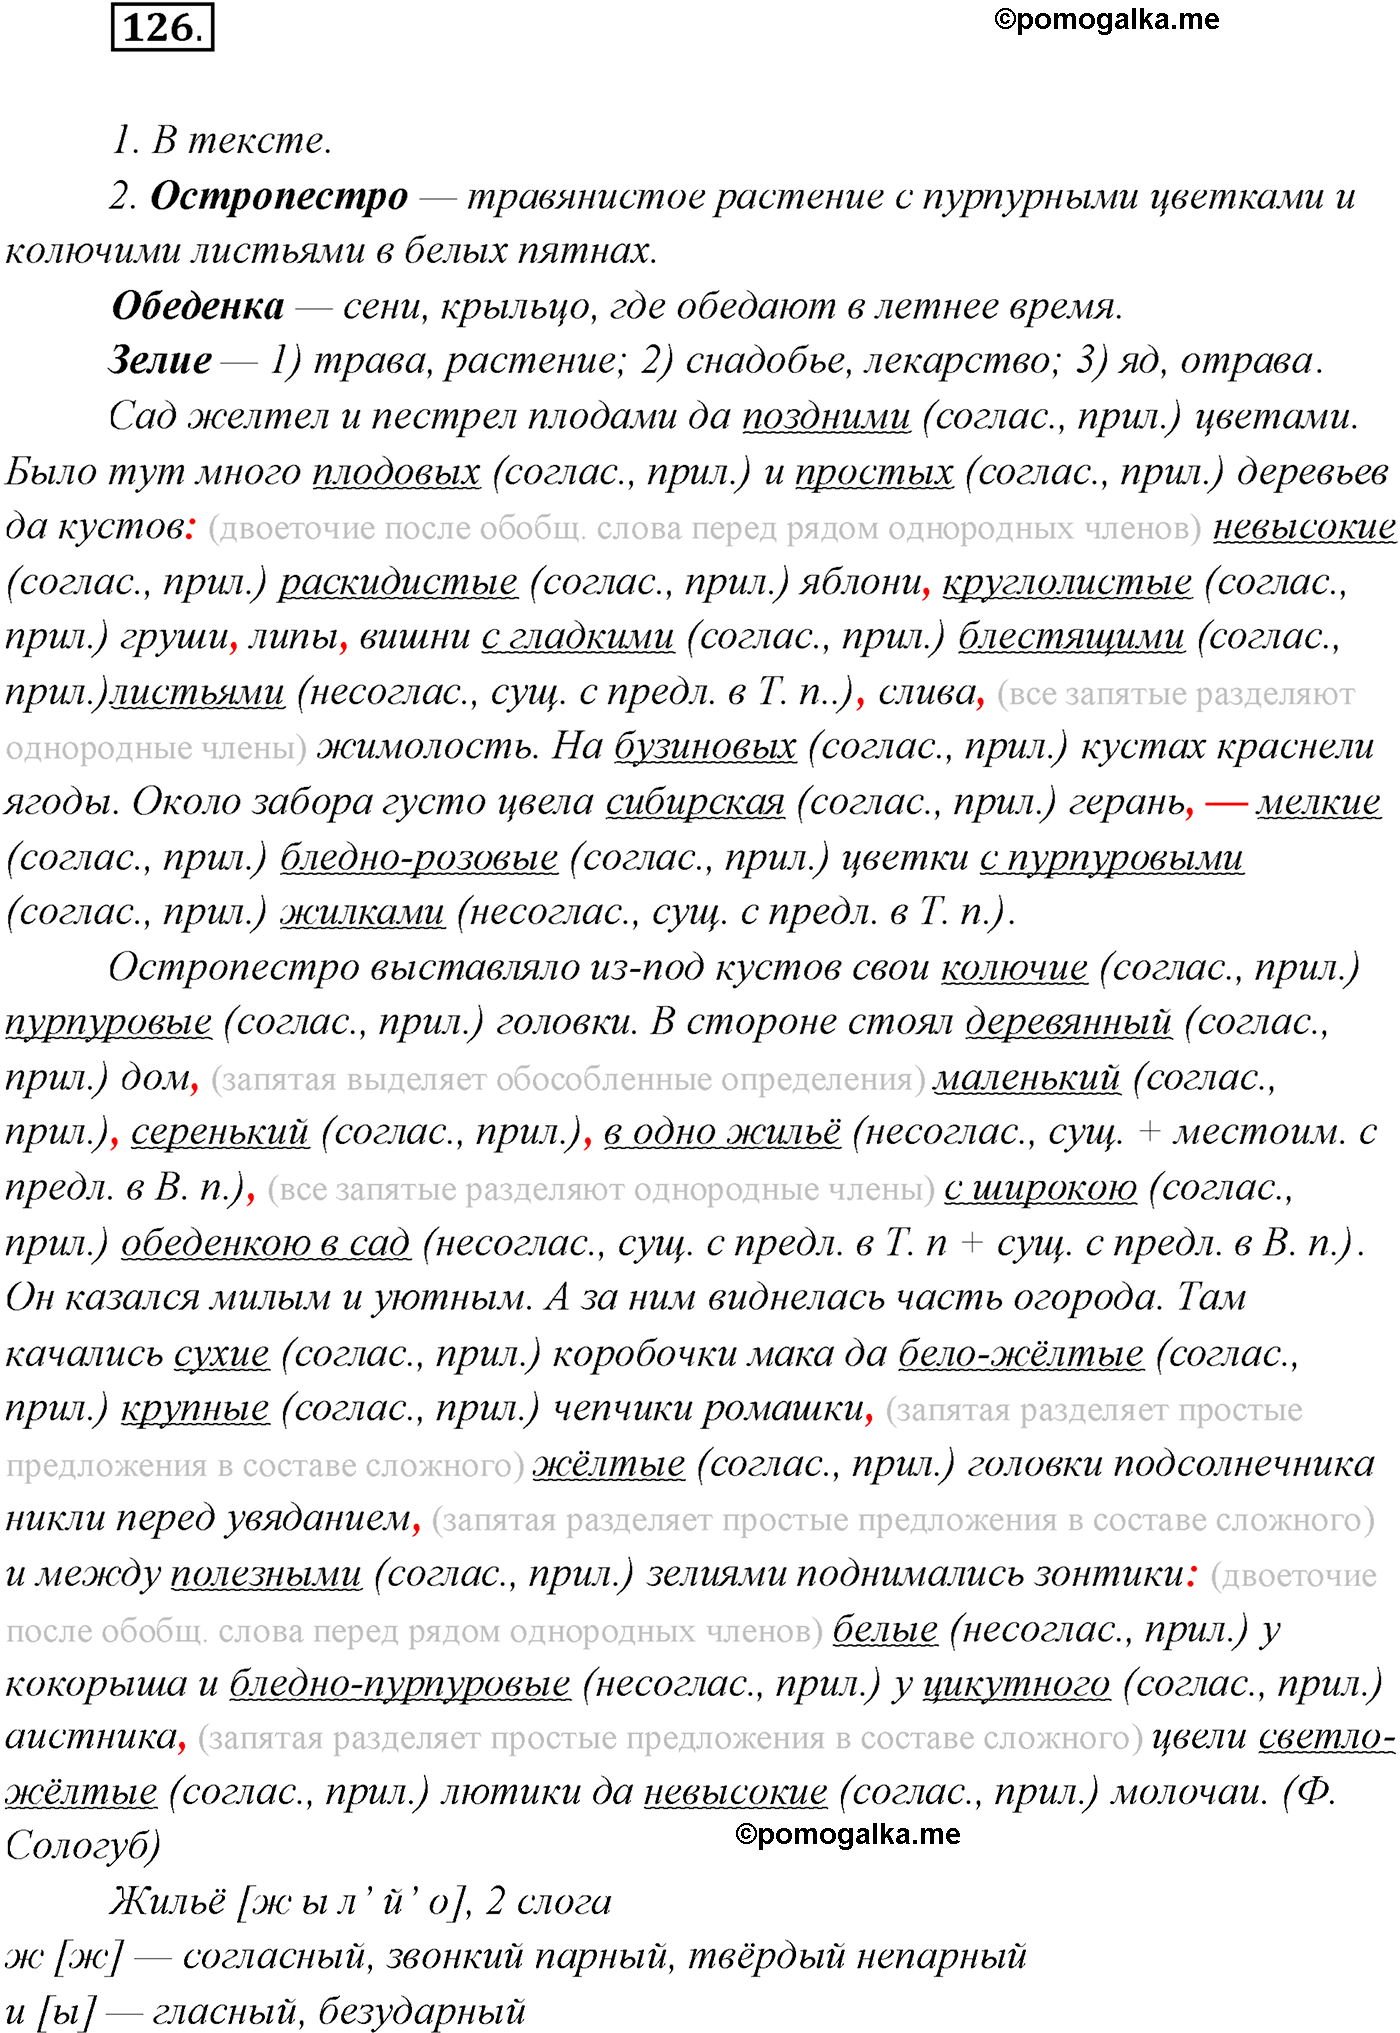 упражнение №126 русский язык 10 класс Гусарова 2021 год